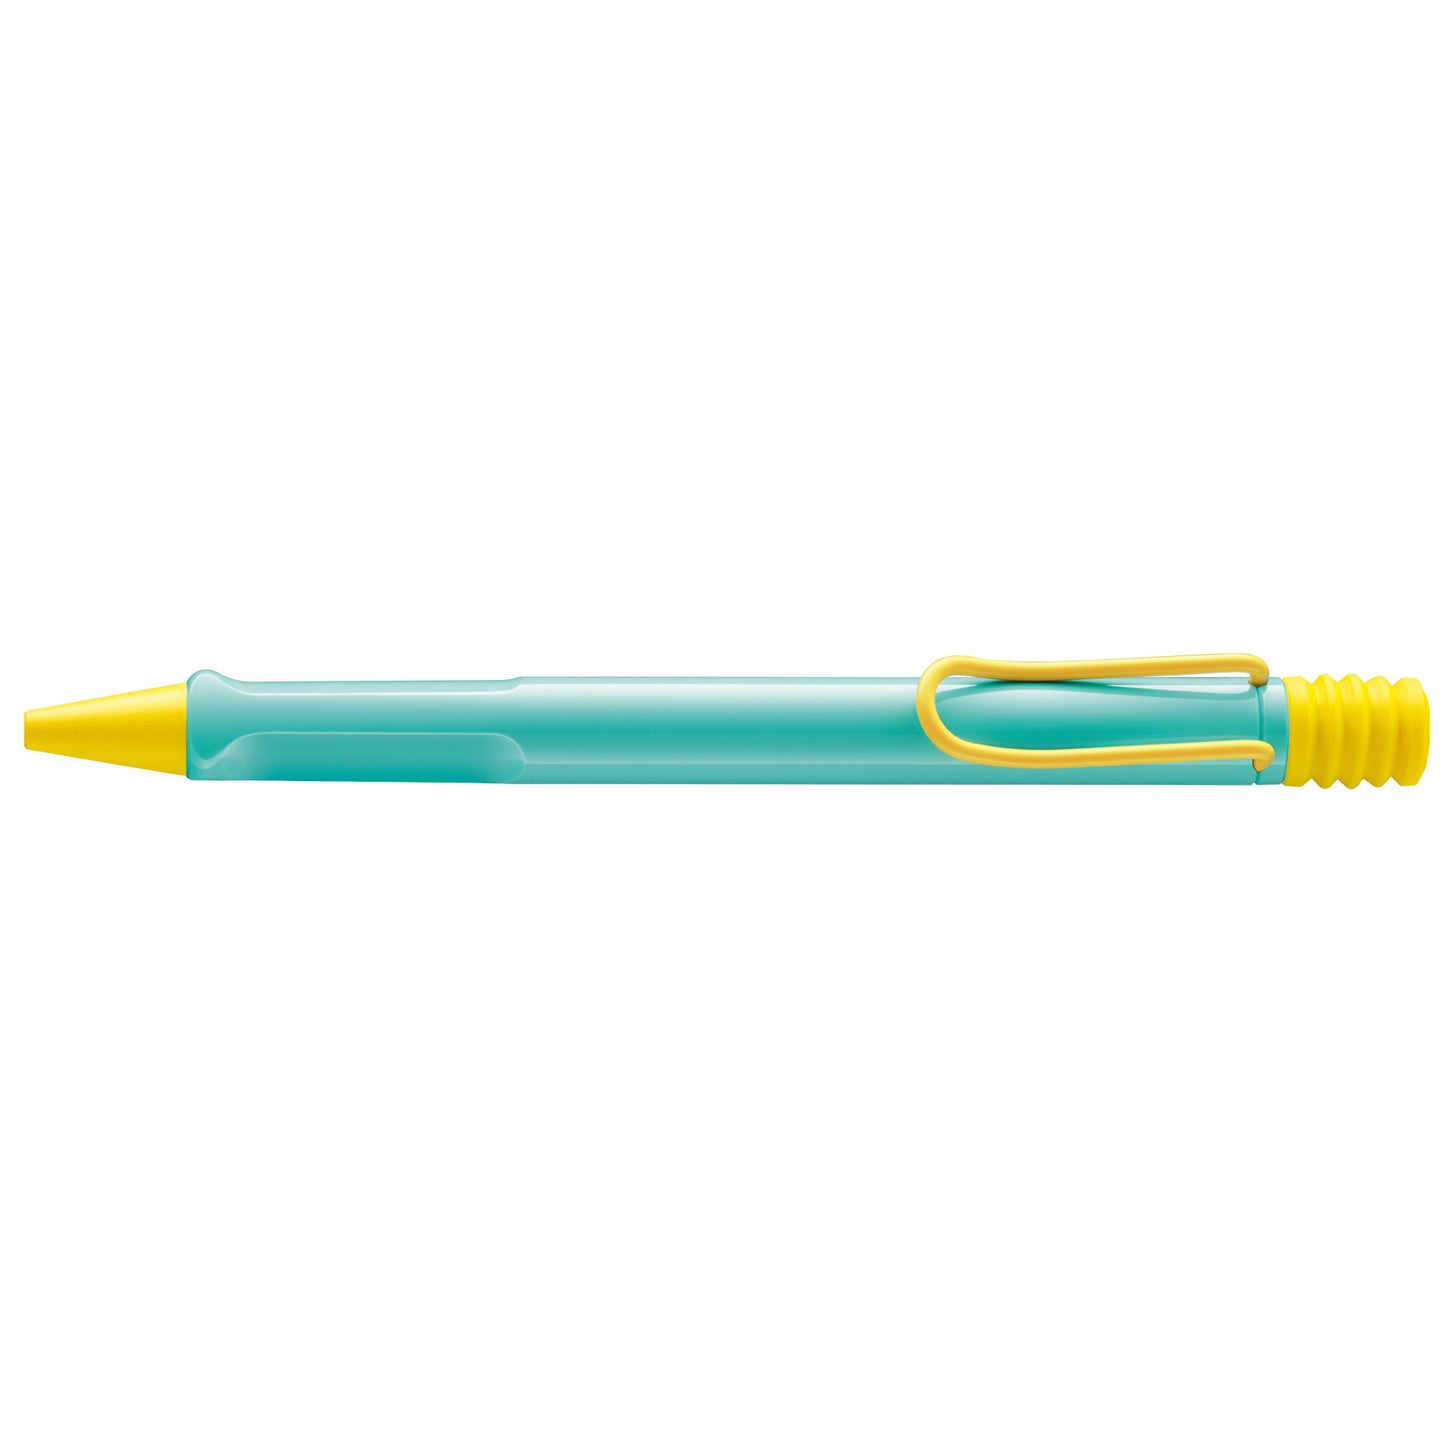 LAMY Safari Special Edition Ballpoint Pen - Pina Colada